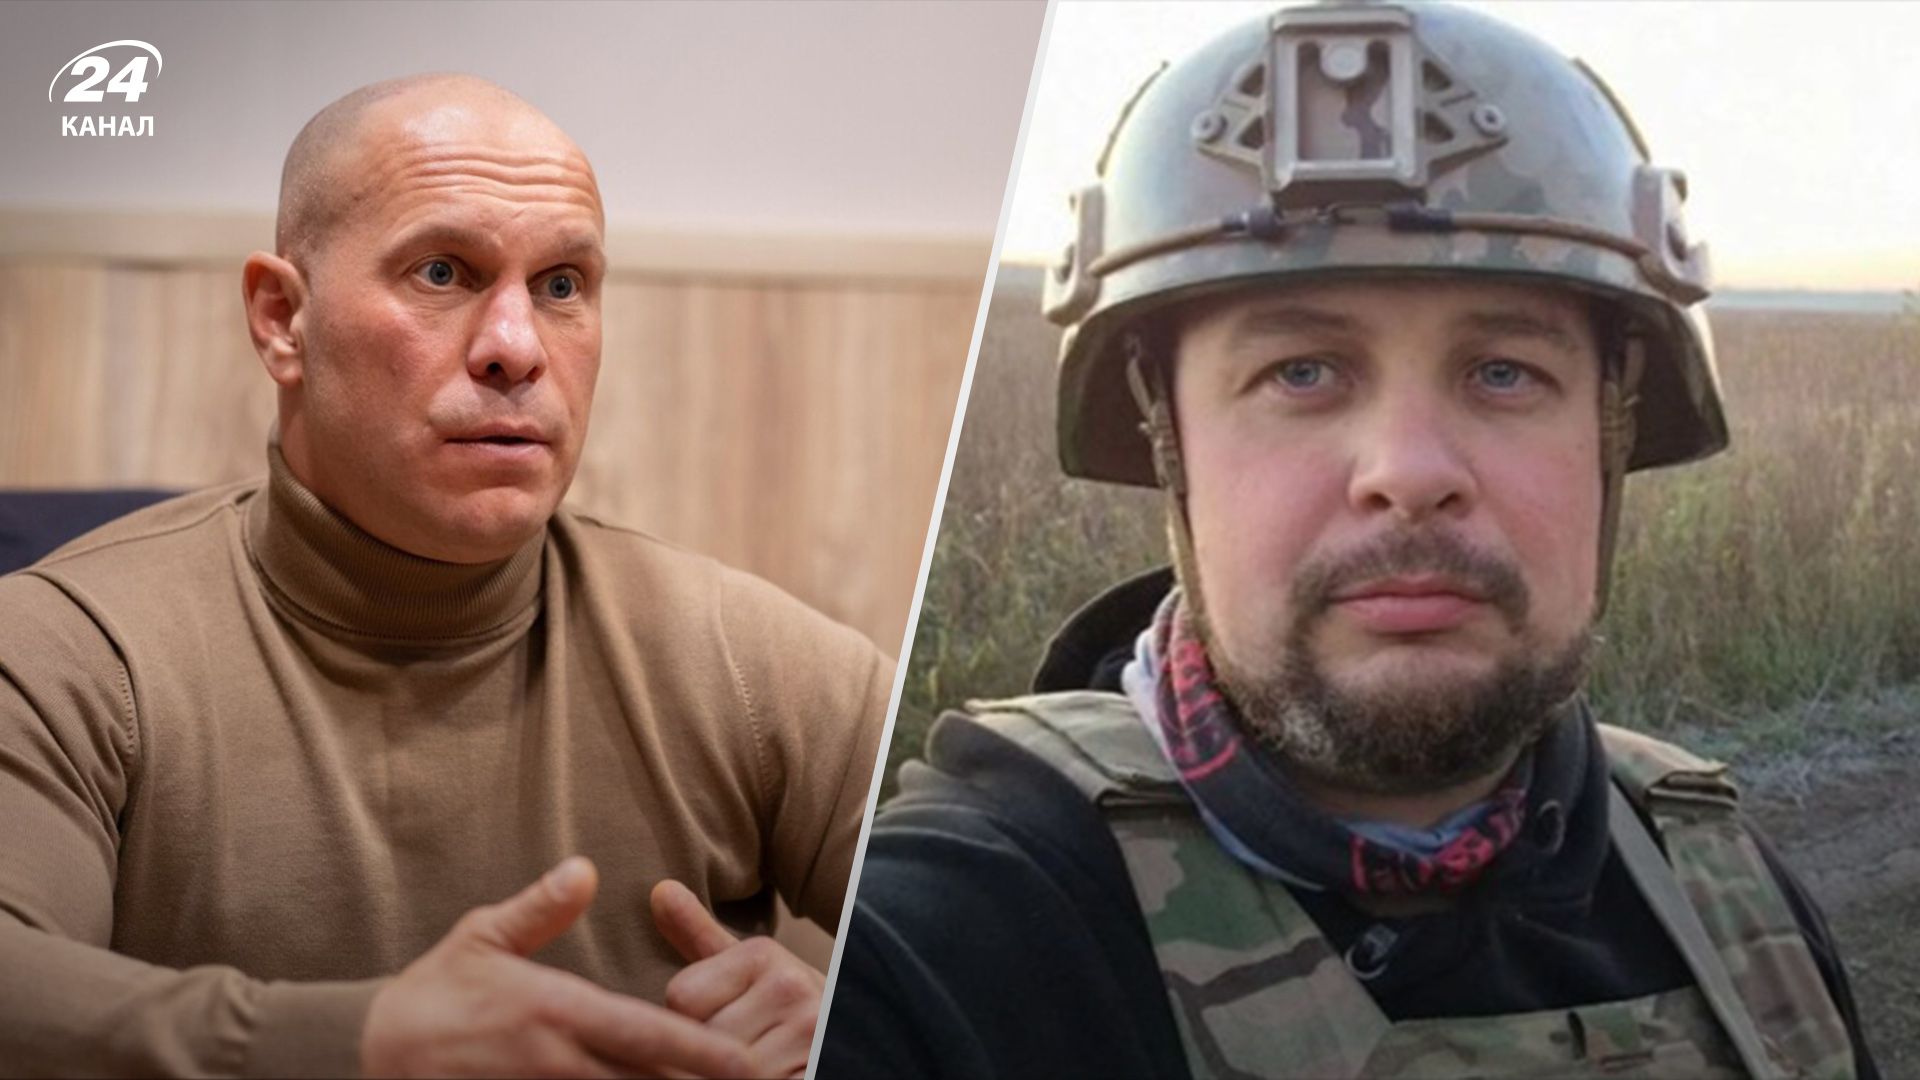 За ликвидацией Кивы, Татарского и еще десятков врагов Украины стоит СБУ, - источник - 24 Канал